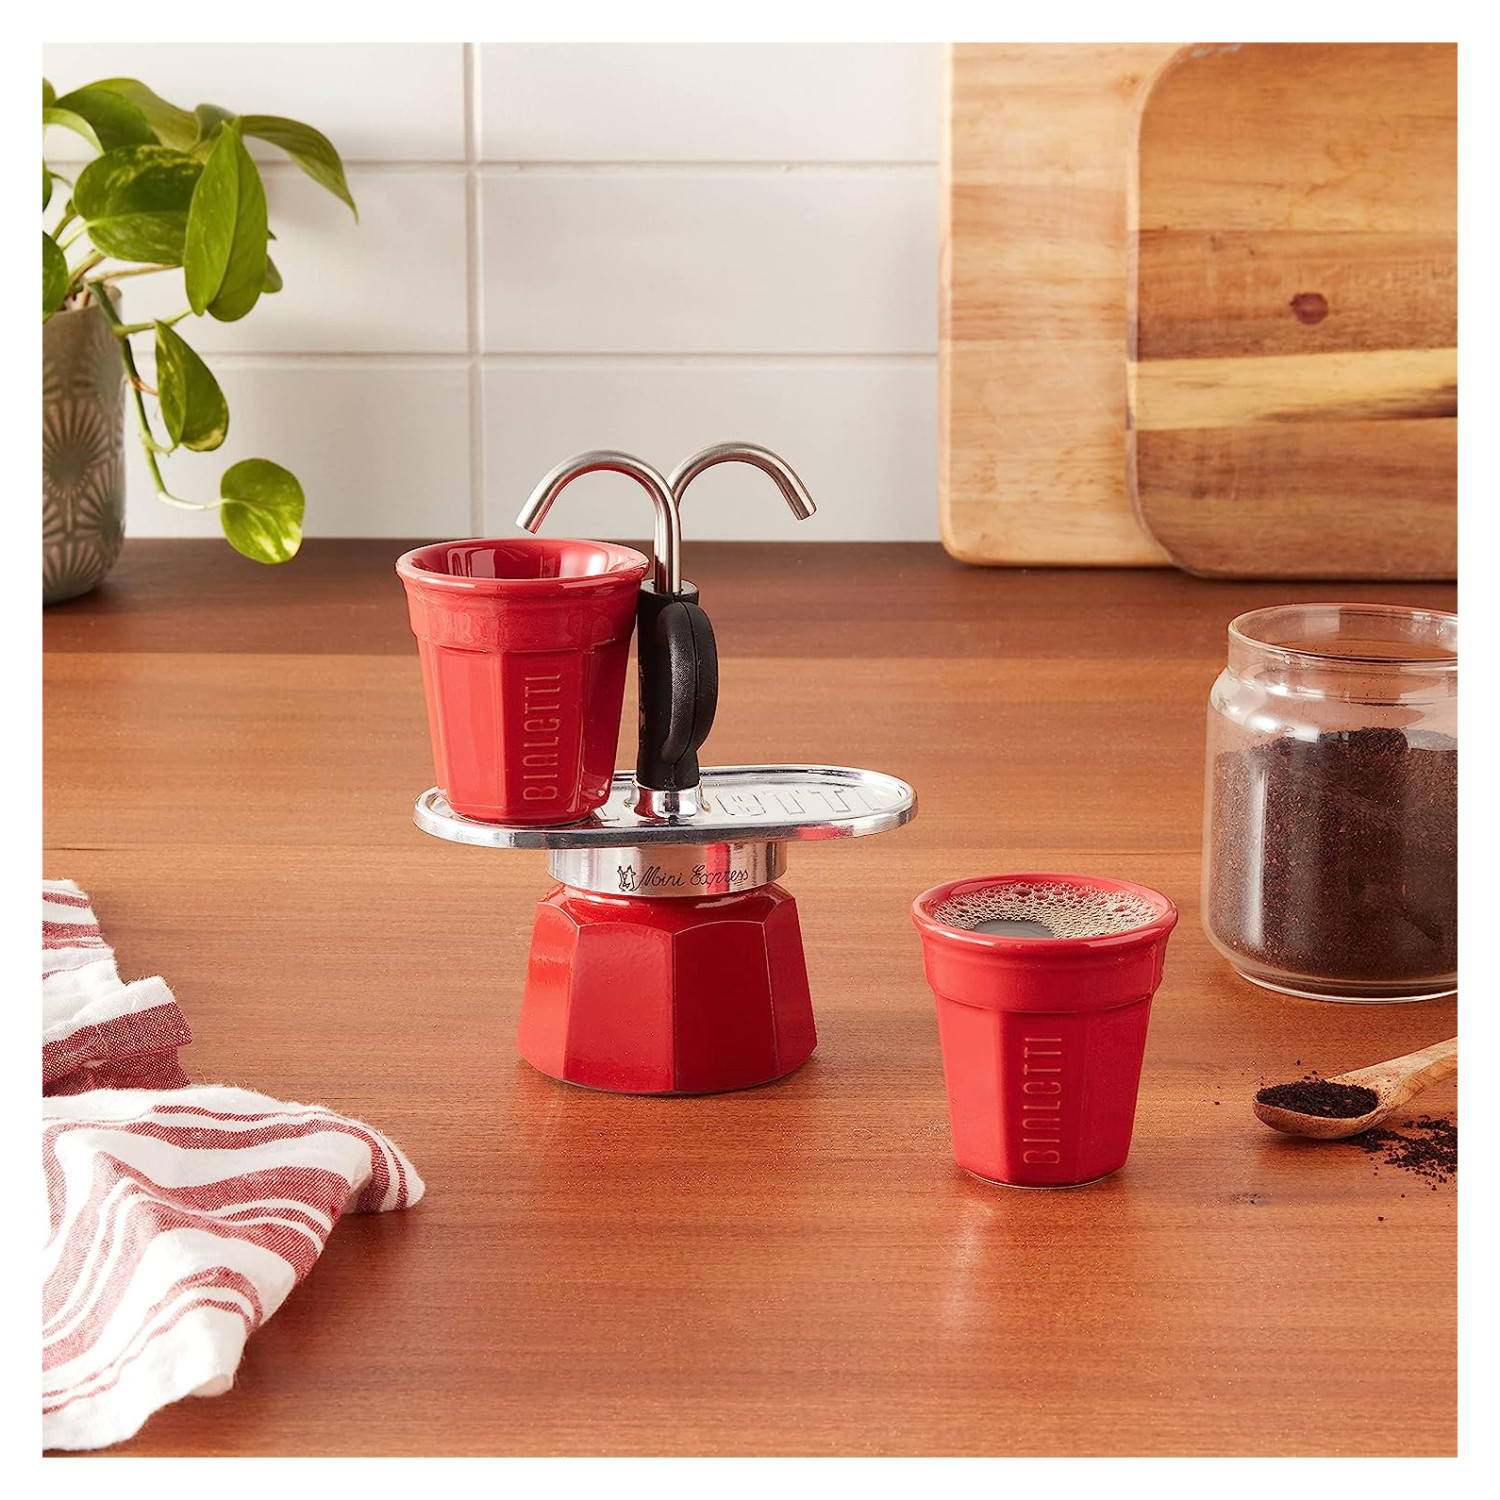 BIALETTI Set Mini R für Tassen 2TZ 2 Espressokocher RED Rot